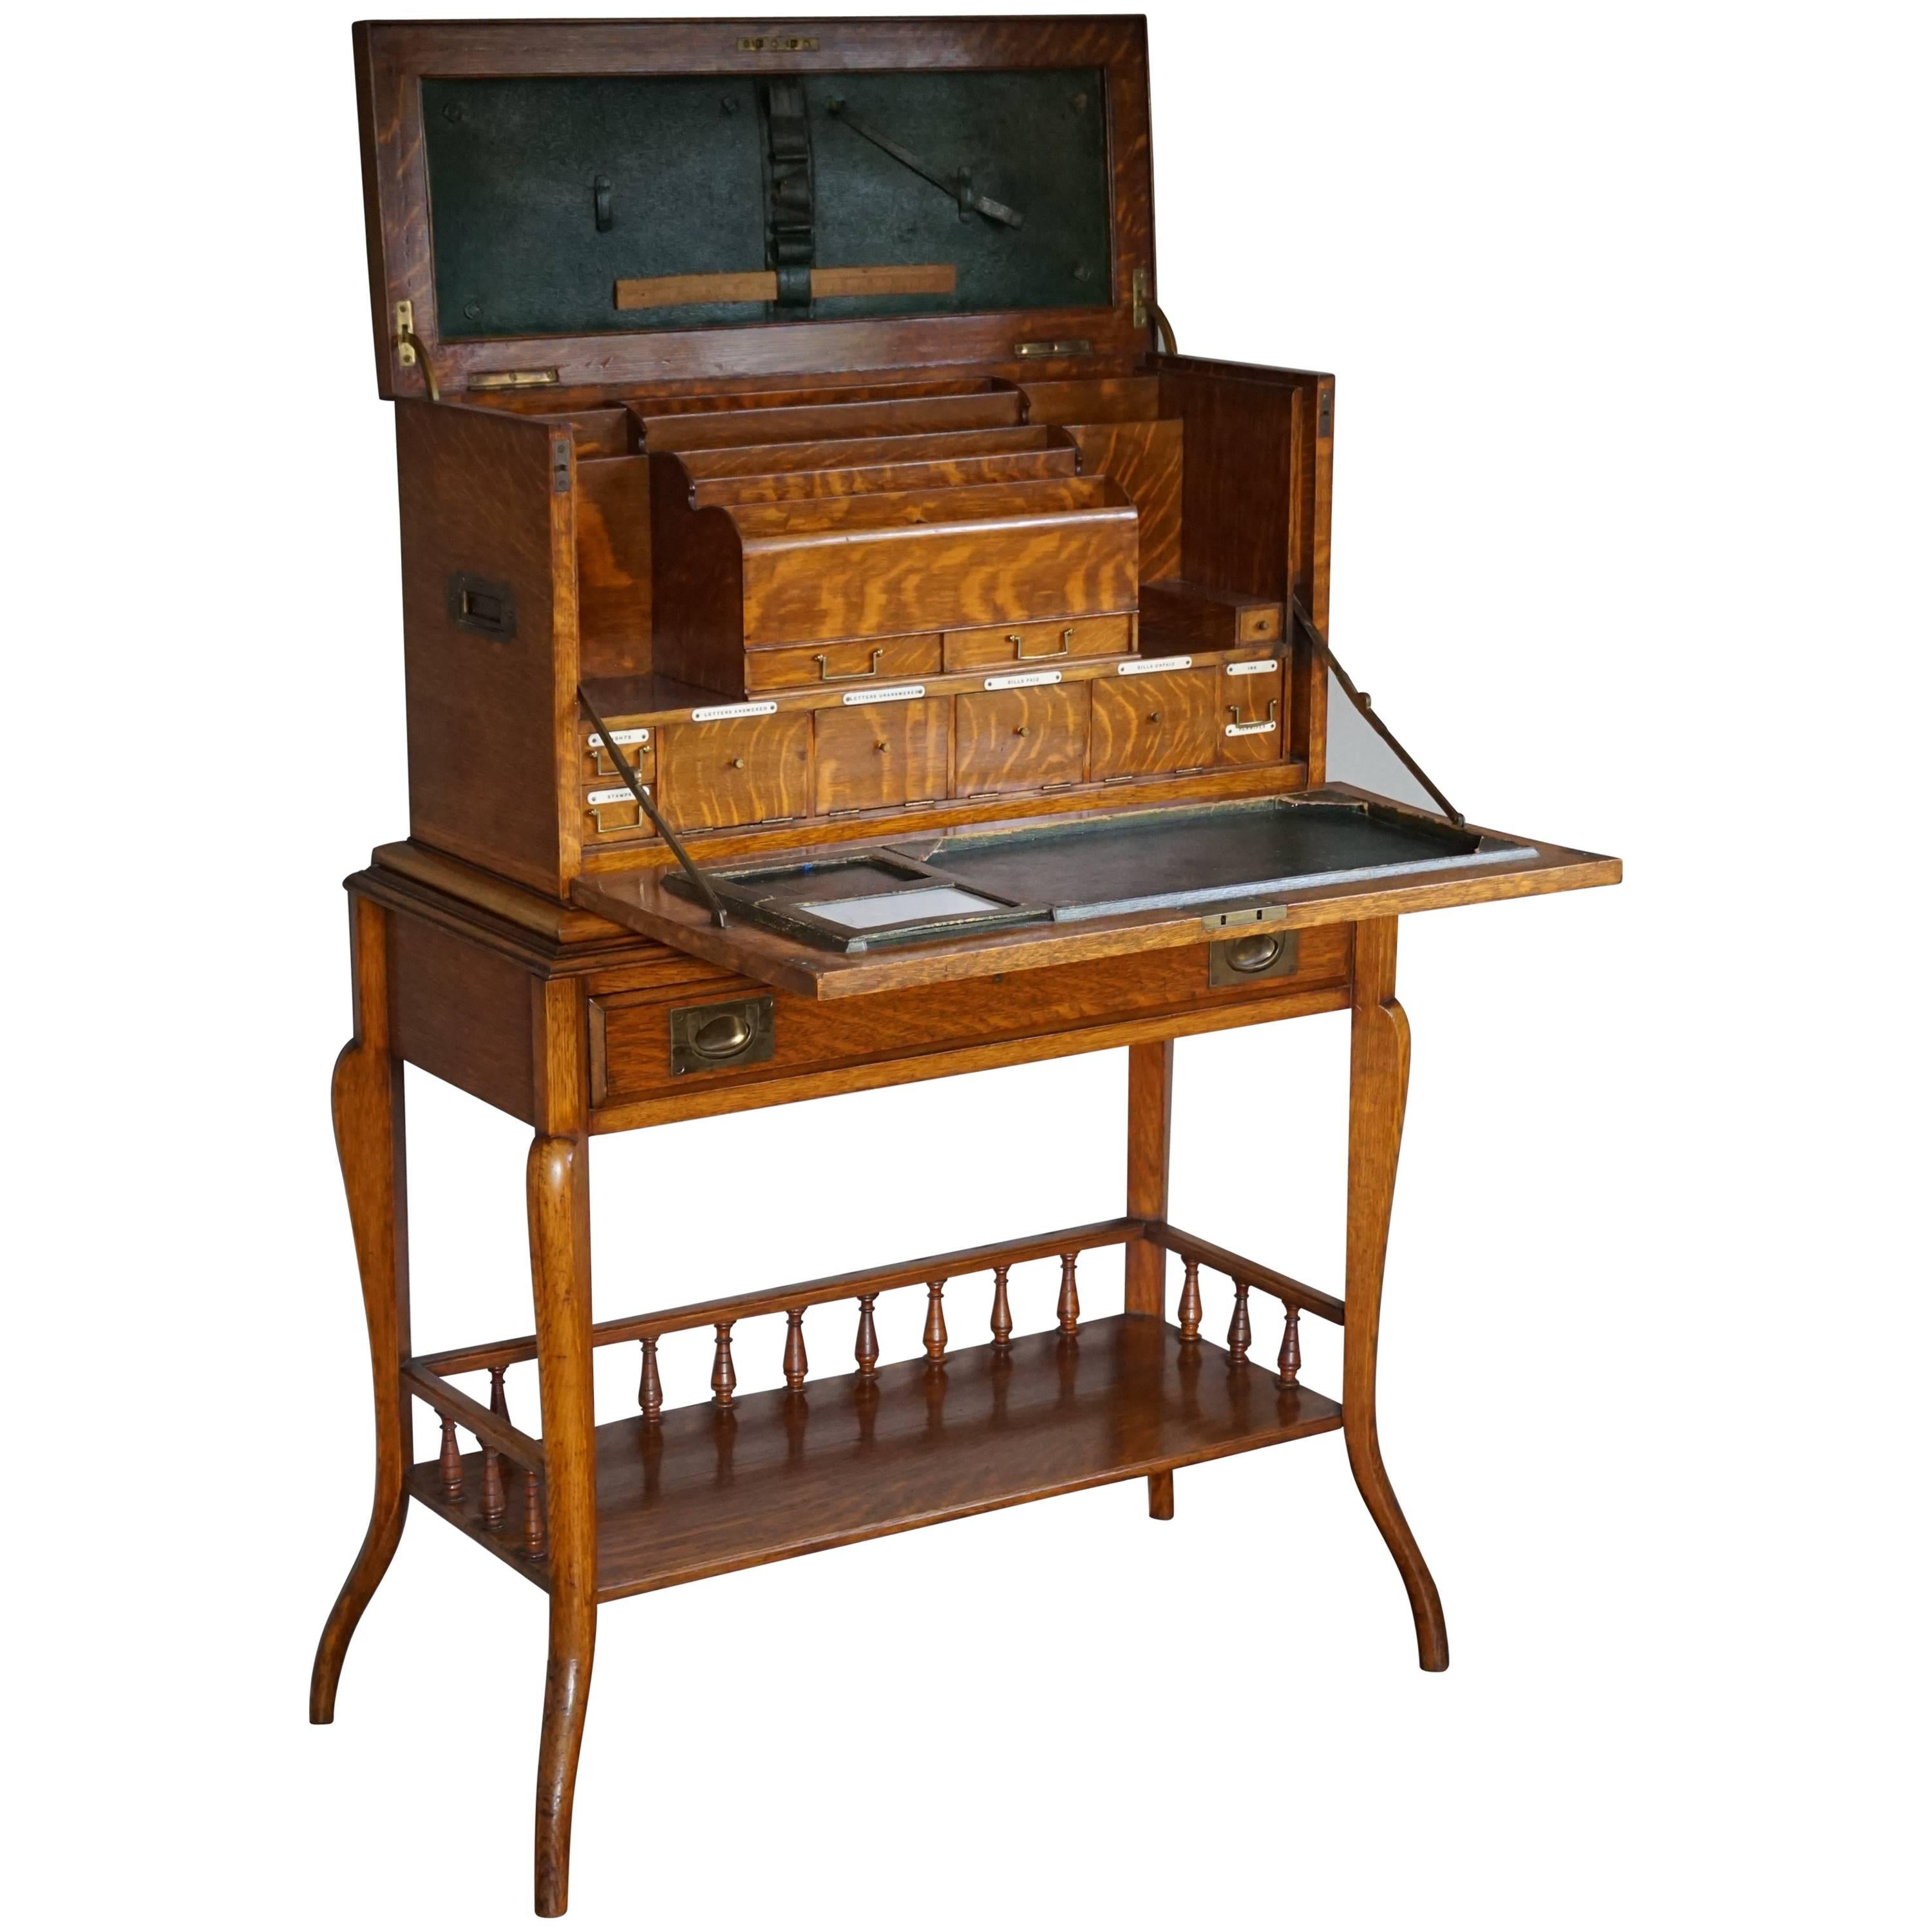 Atemberaubende Kampagne oder Travelers-Schreibtisch von Thomas Potter aus dem späten 19. Jahrhundert